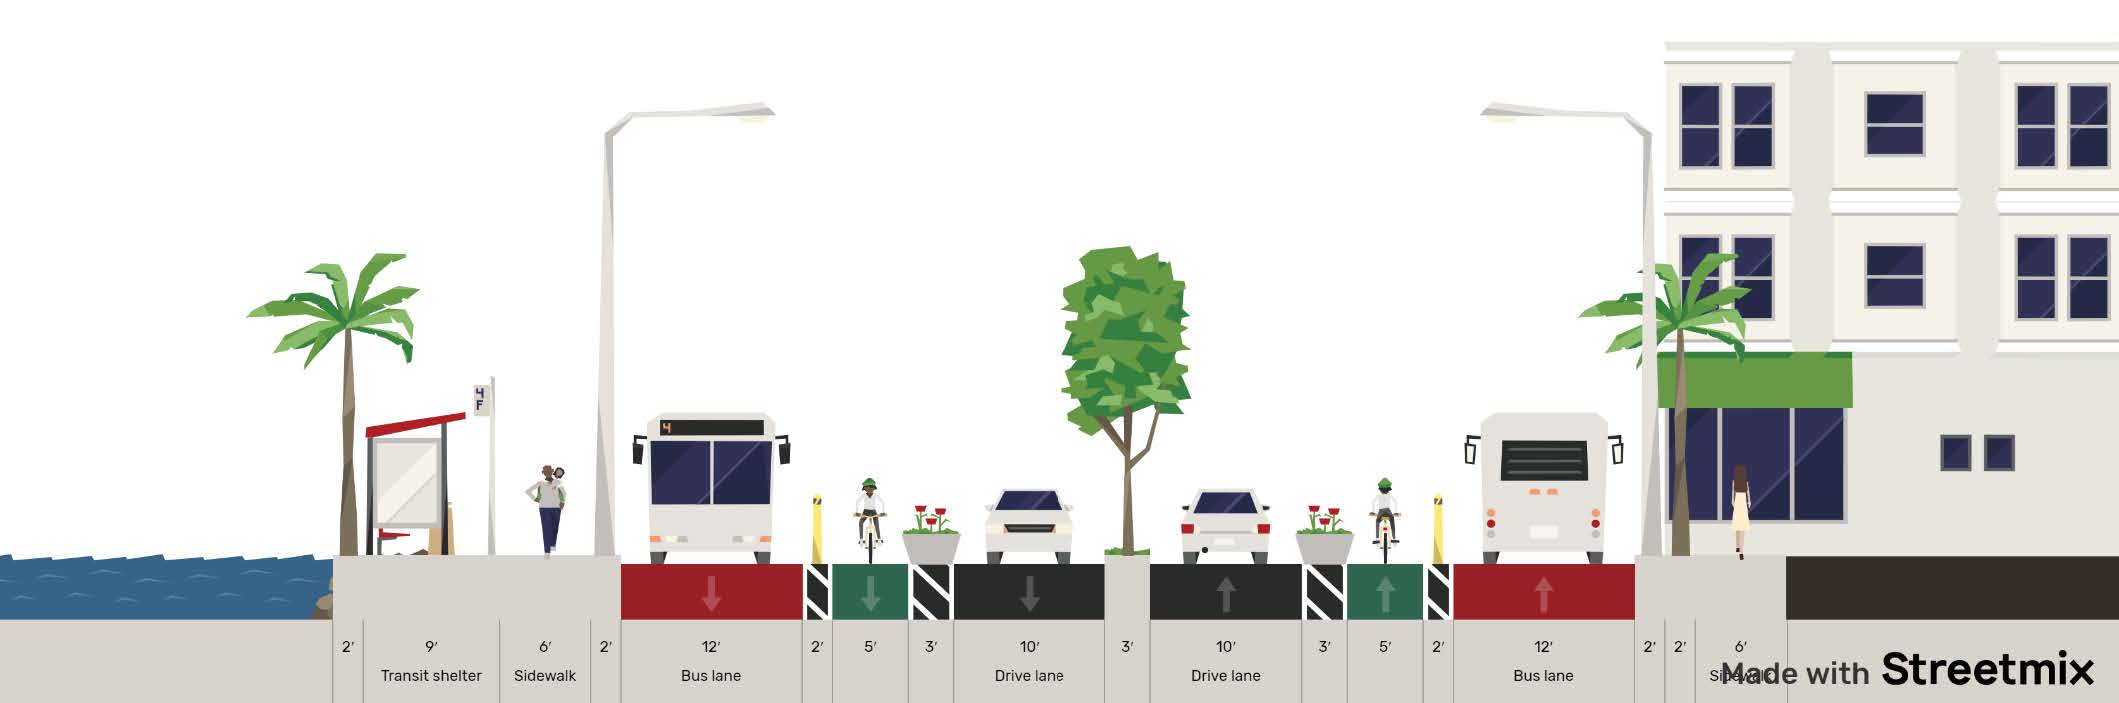 Sección transversal de una calle que muestra carriles exclusivos para autobuses, carriles para bicicletas, carriles de circulación general y aceras.